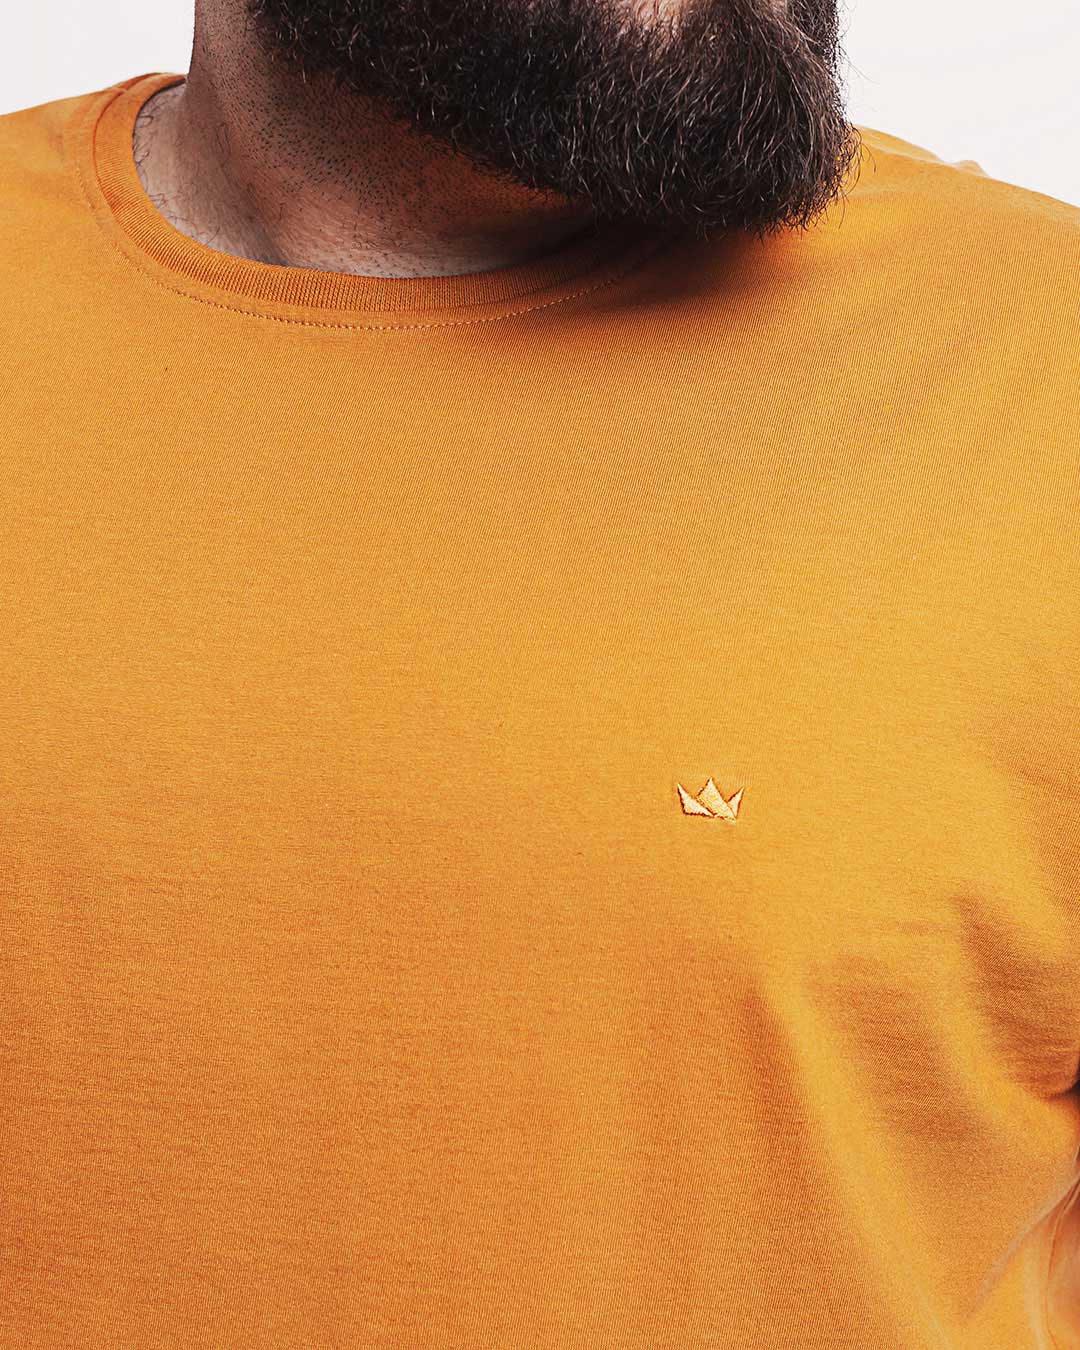 Camiseta Algodão 301 Amarela Ezutus Compre roupas estilosas na Amorope, site seguro, frete grátis e parcelamento sem juros. Moda feminina e masculina num só lugar.